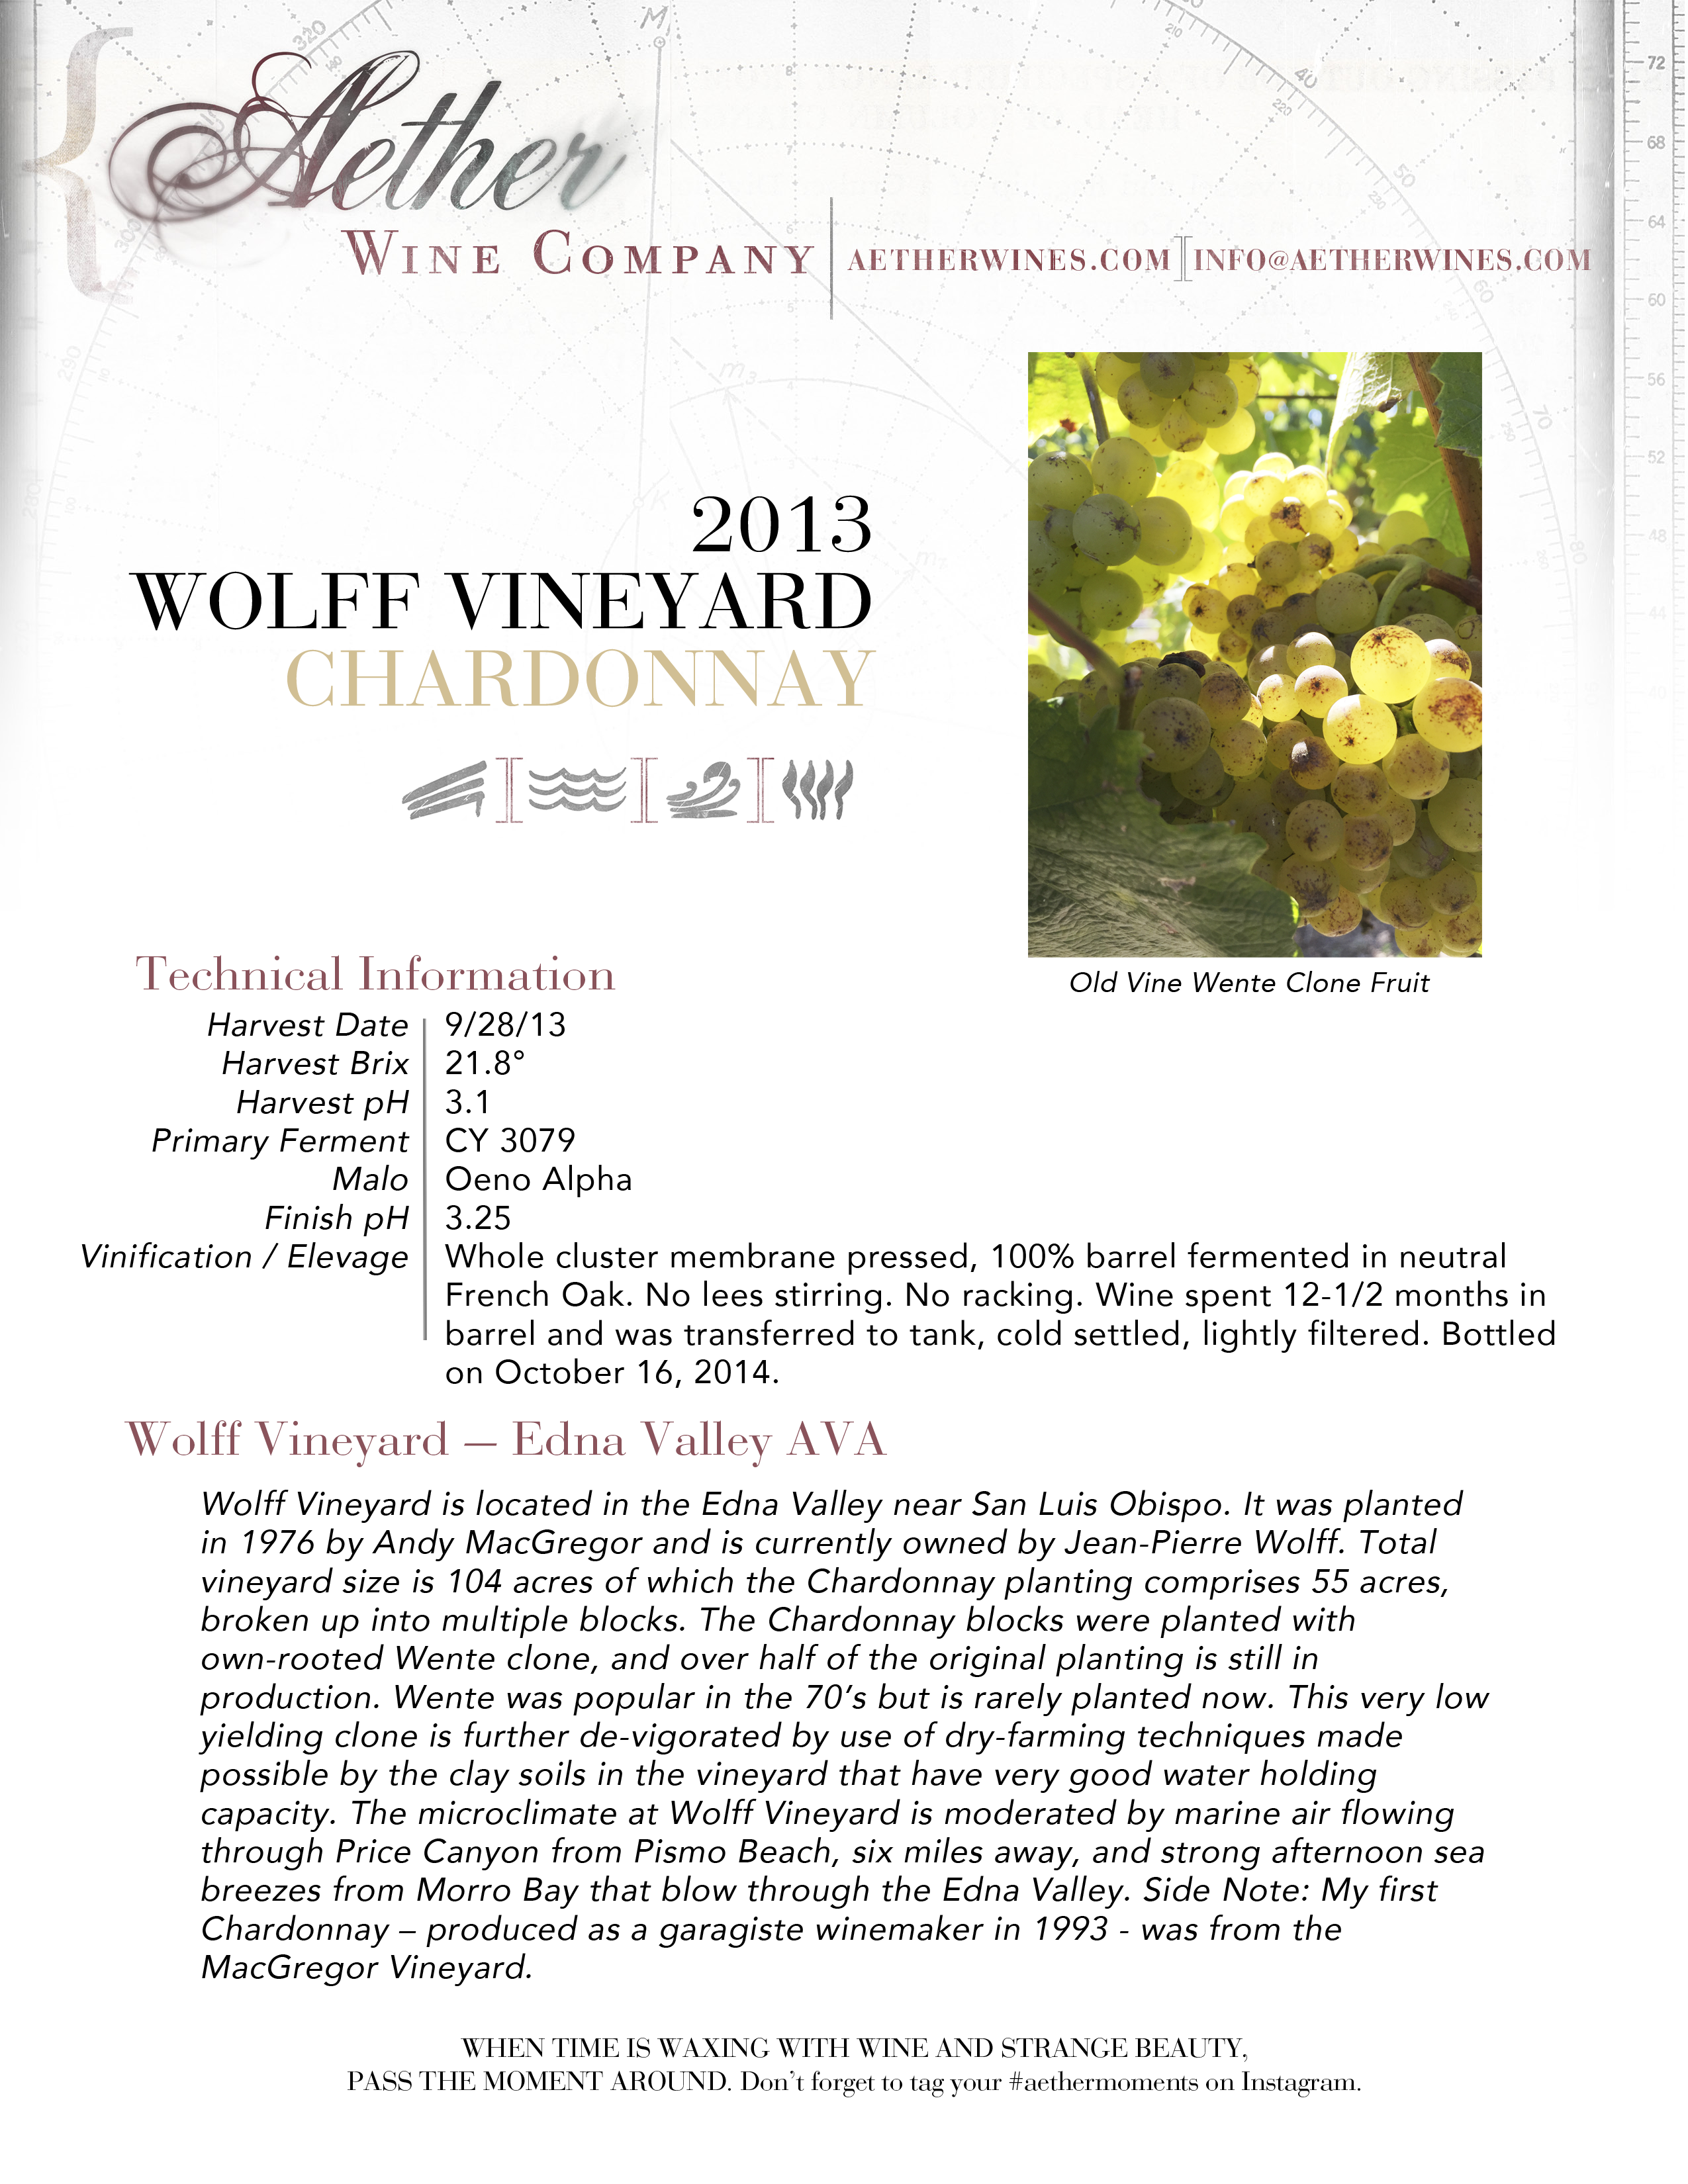 2013 Aether Wolff Vineyard Chardonnay